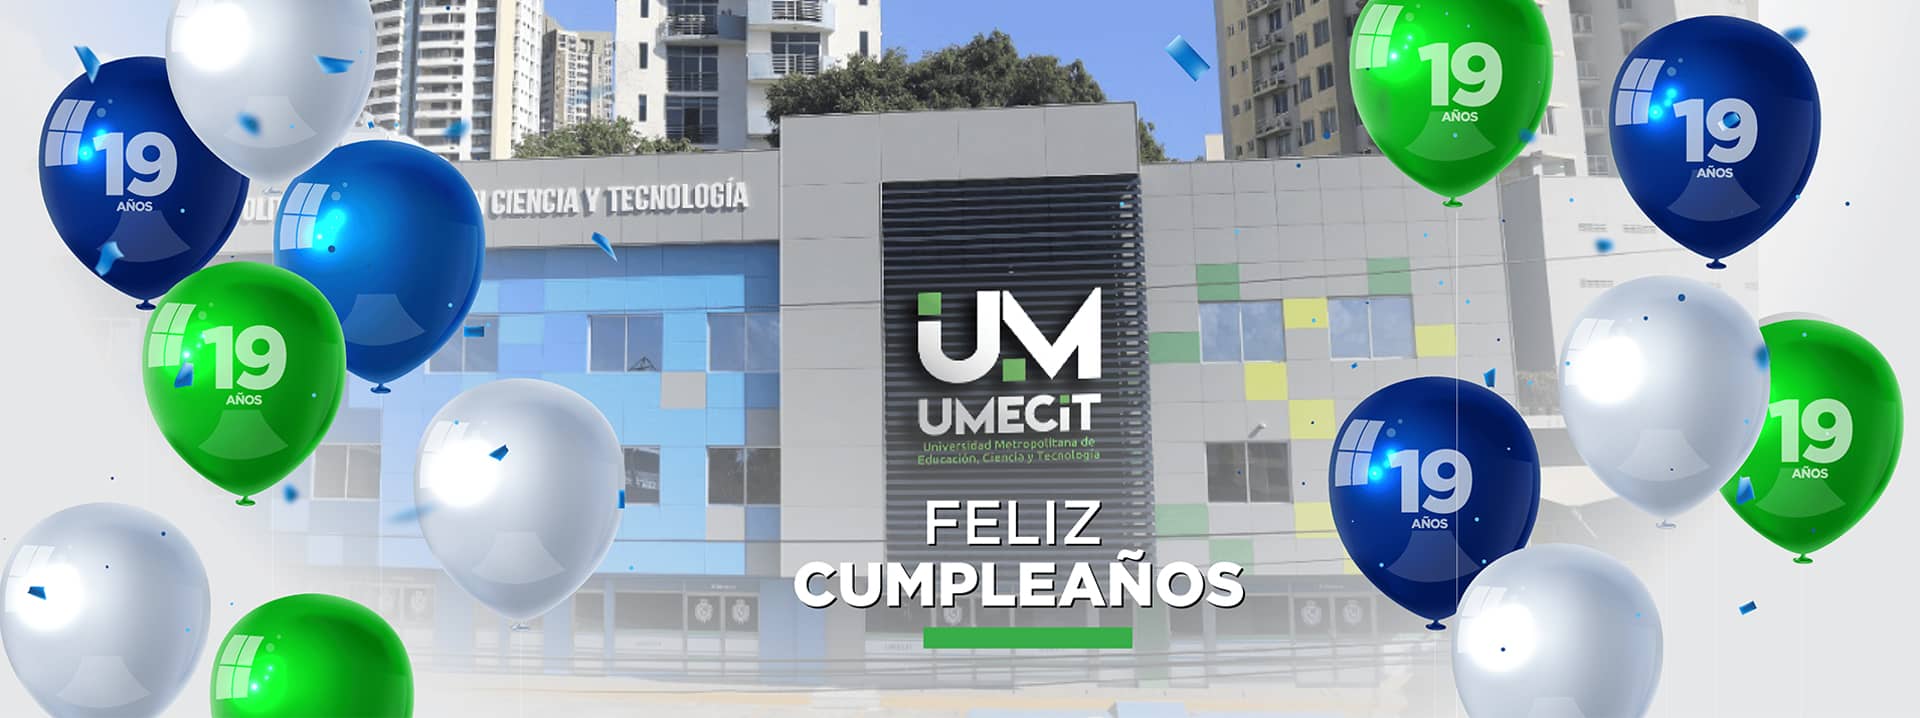 Felicitaciones a UMECIT en su 19º aniversario